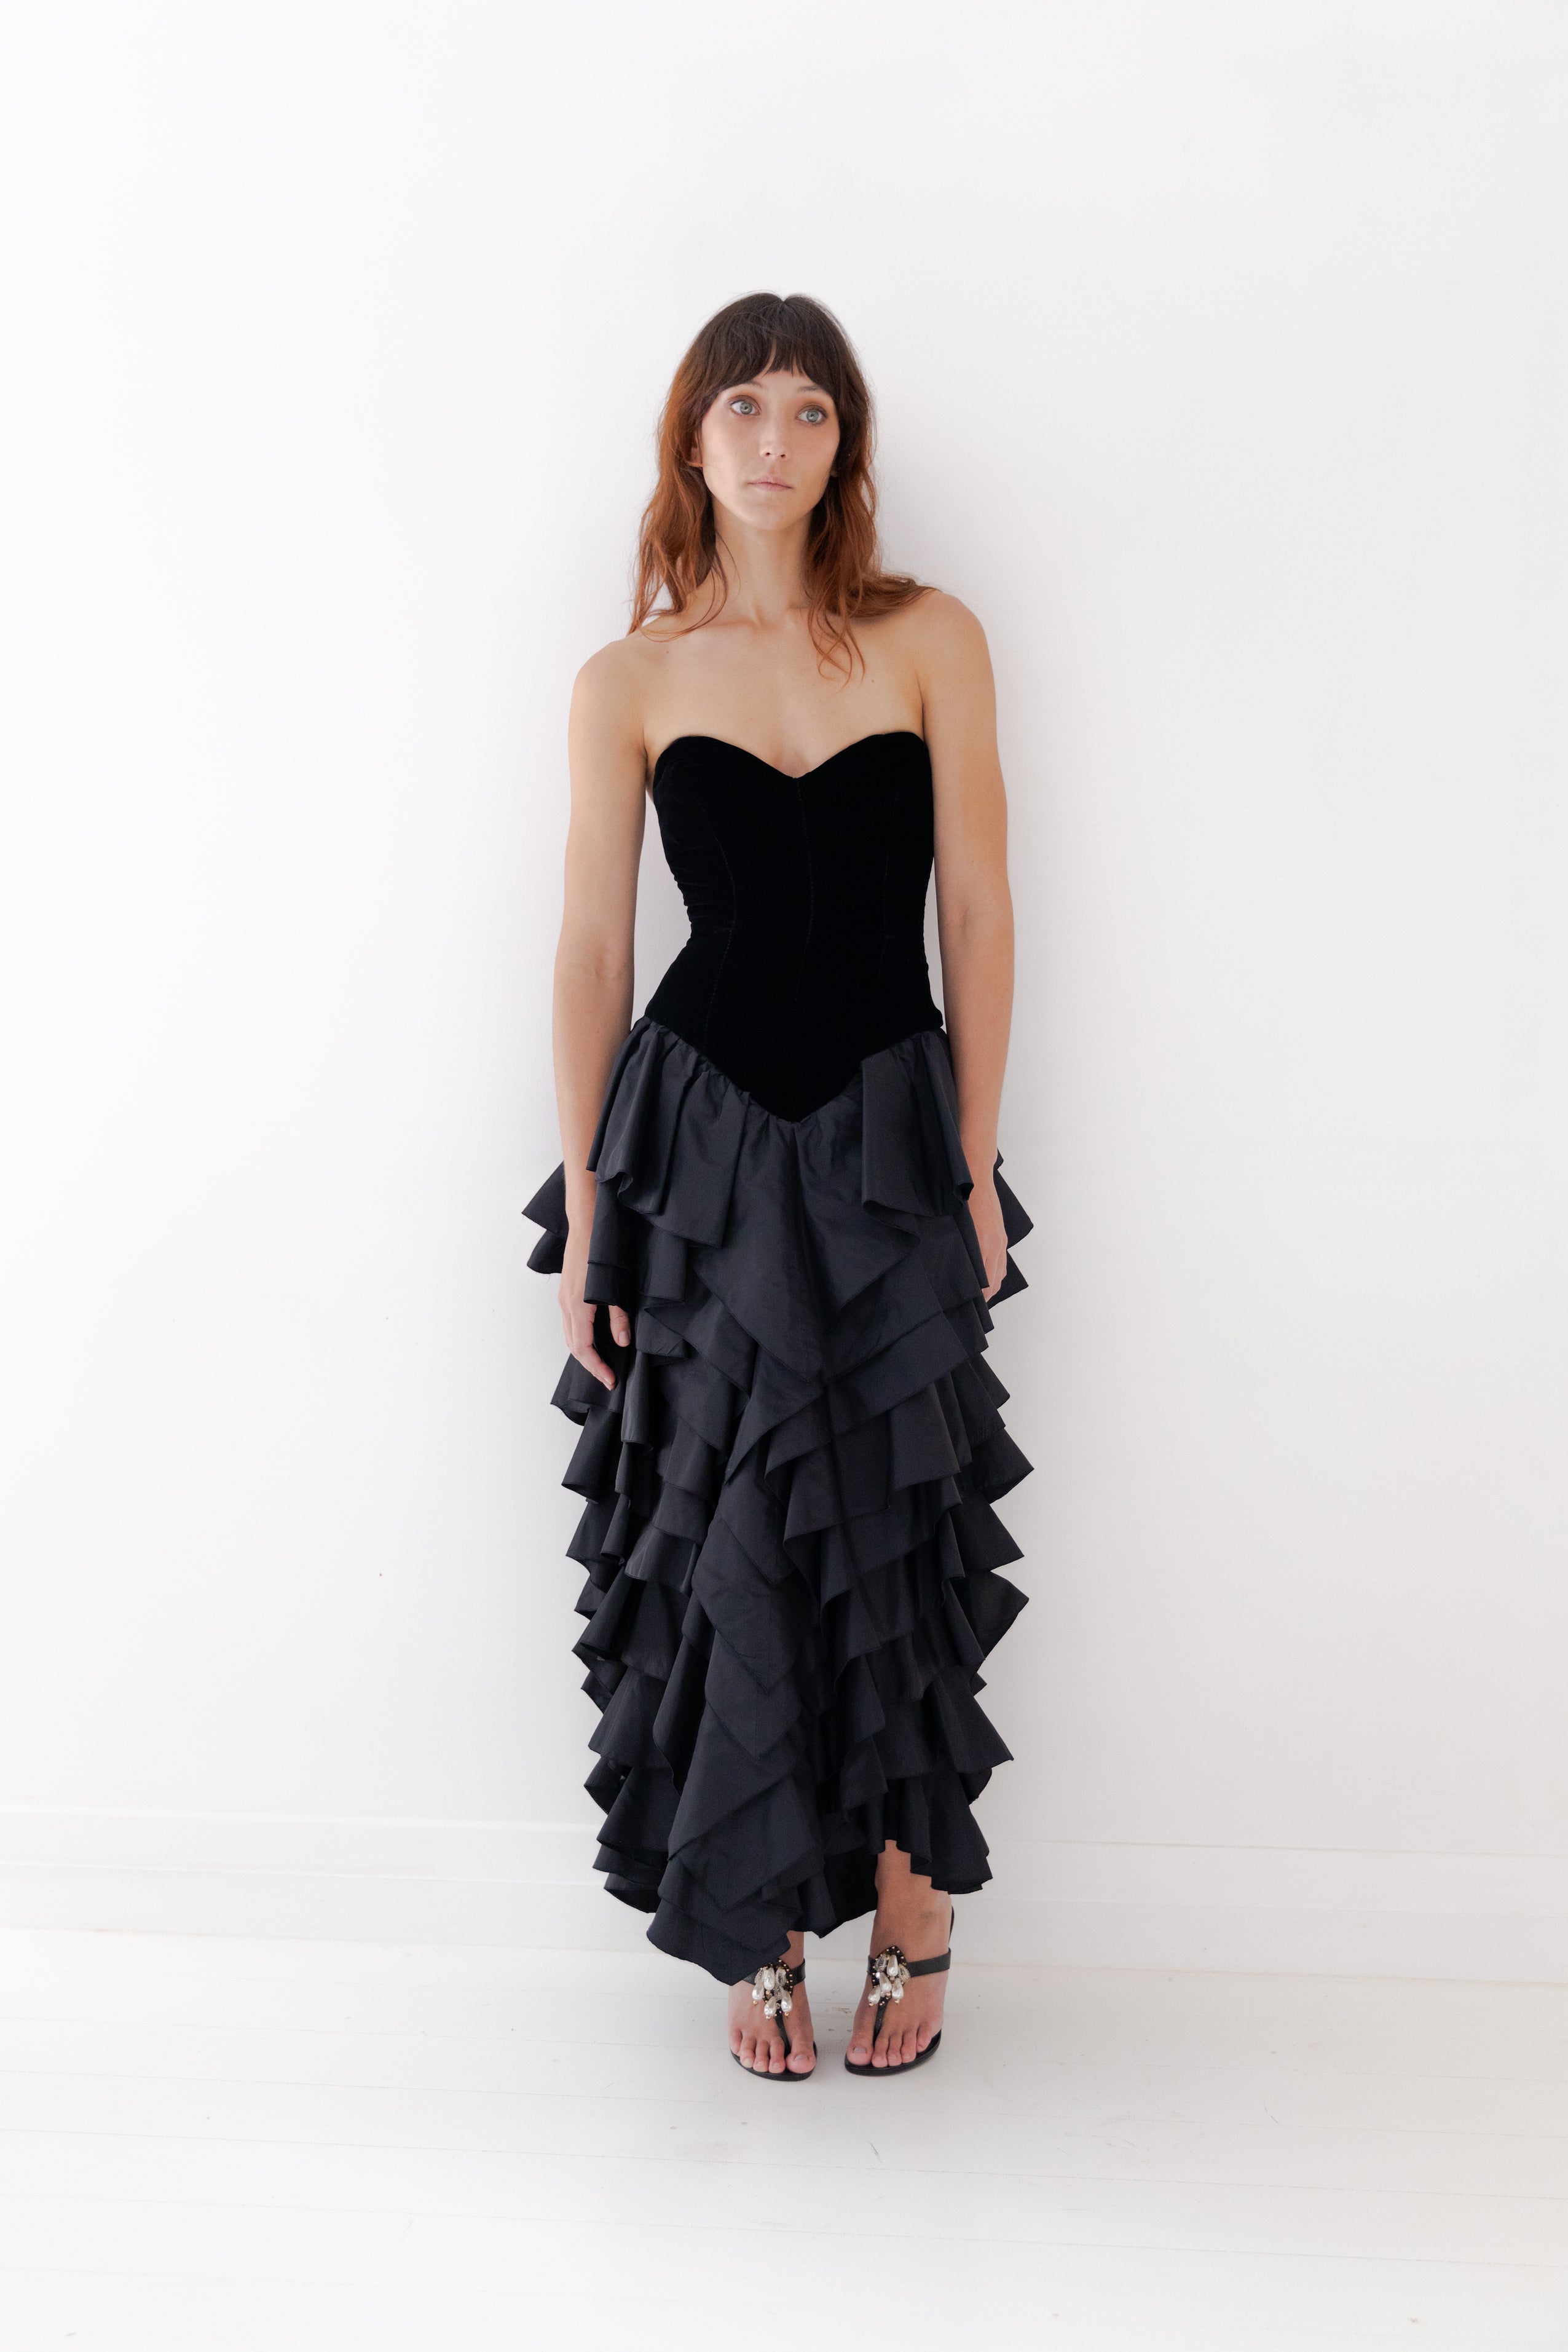 Loris Azzaro <br> 80's strapless velvet & taffeta ruffle skirt gown